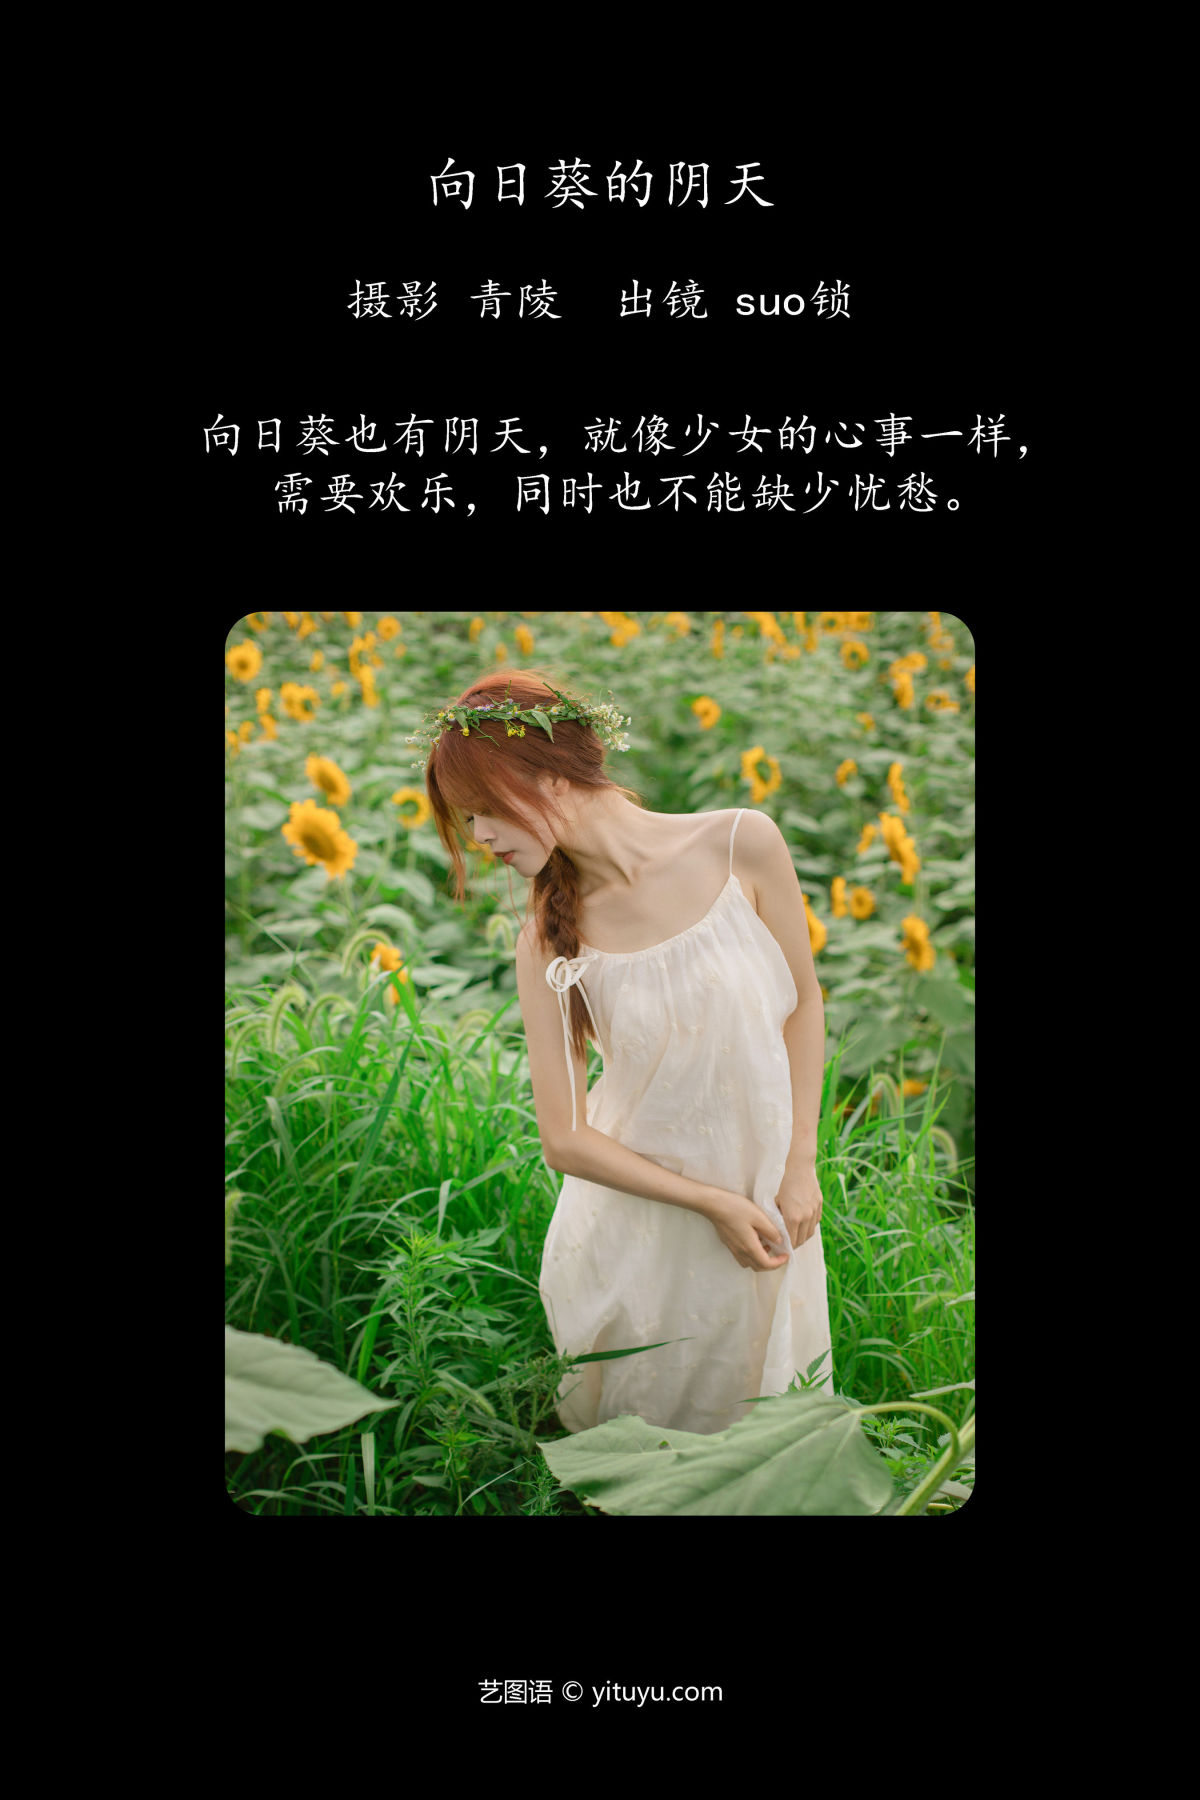 青陵_suo锁《向日葵的阴天》美图作品图片2